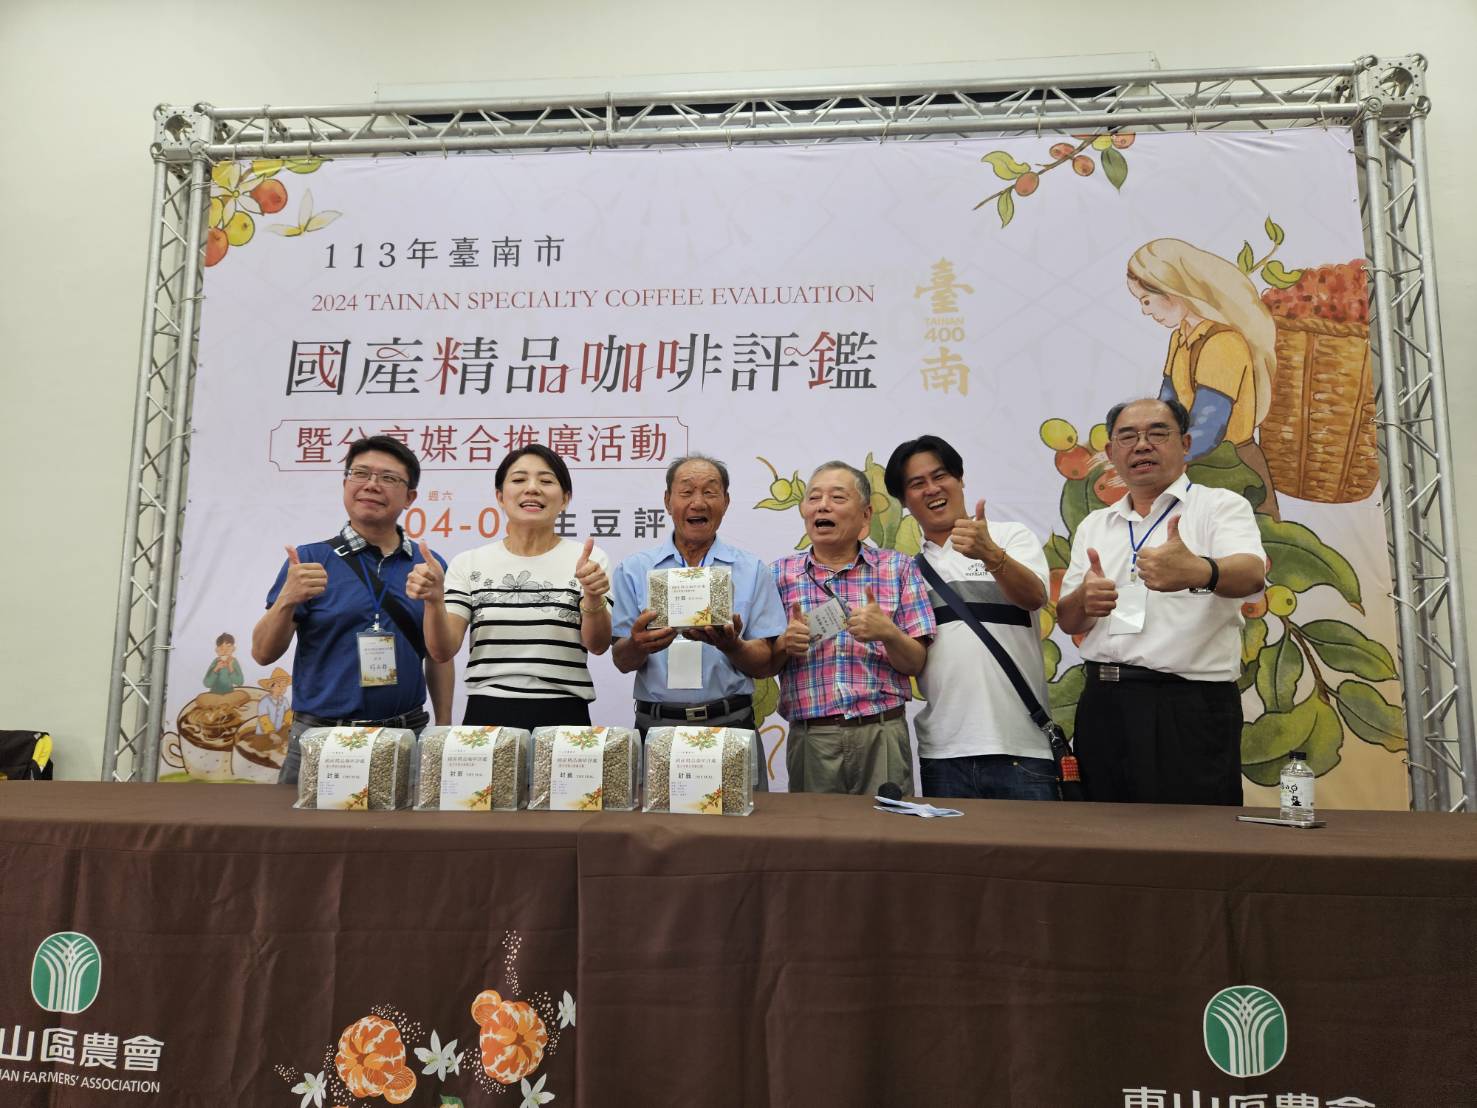 臺南精品咖啡媒合會   評鑑特等獎生豆競標每公斤16000元創新高